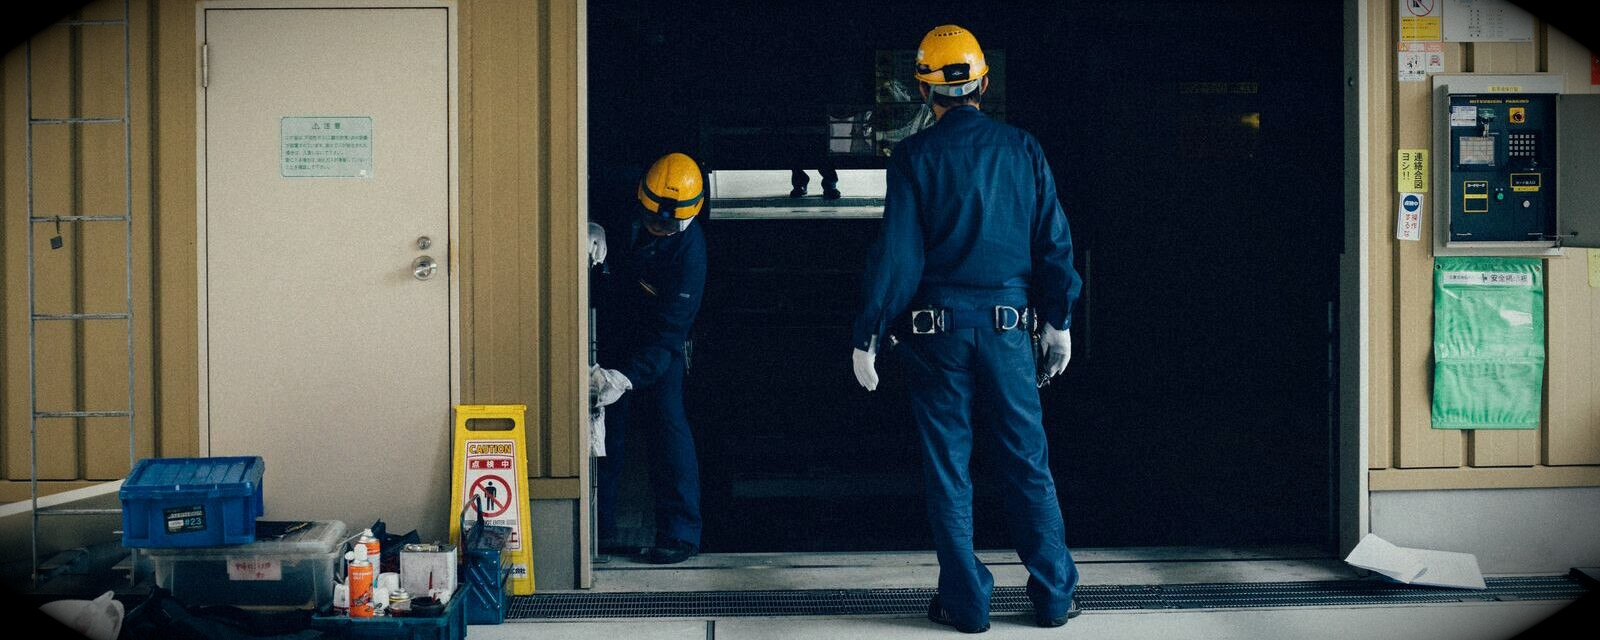 Aussendienstarbeiter mit blauem Overall und gelben Helm